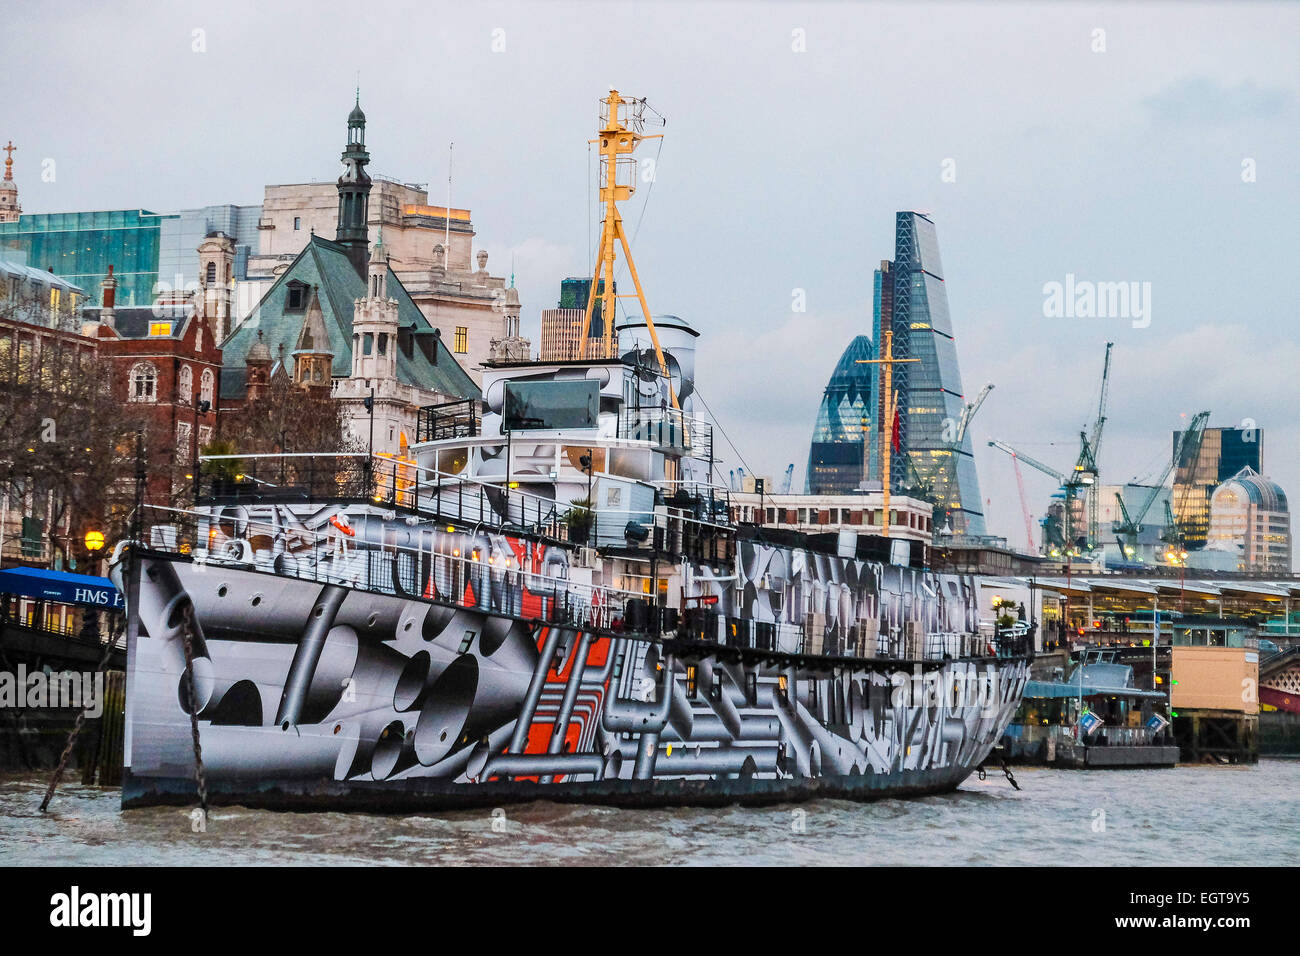 Londres, HMS Président transformé avec "camouflage" travail de peinture de l'artiste allemand à l'occasion du centenaire de la Première Guerre mondiale Banque D'Images